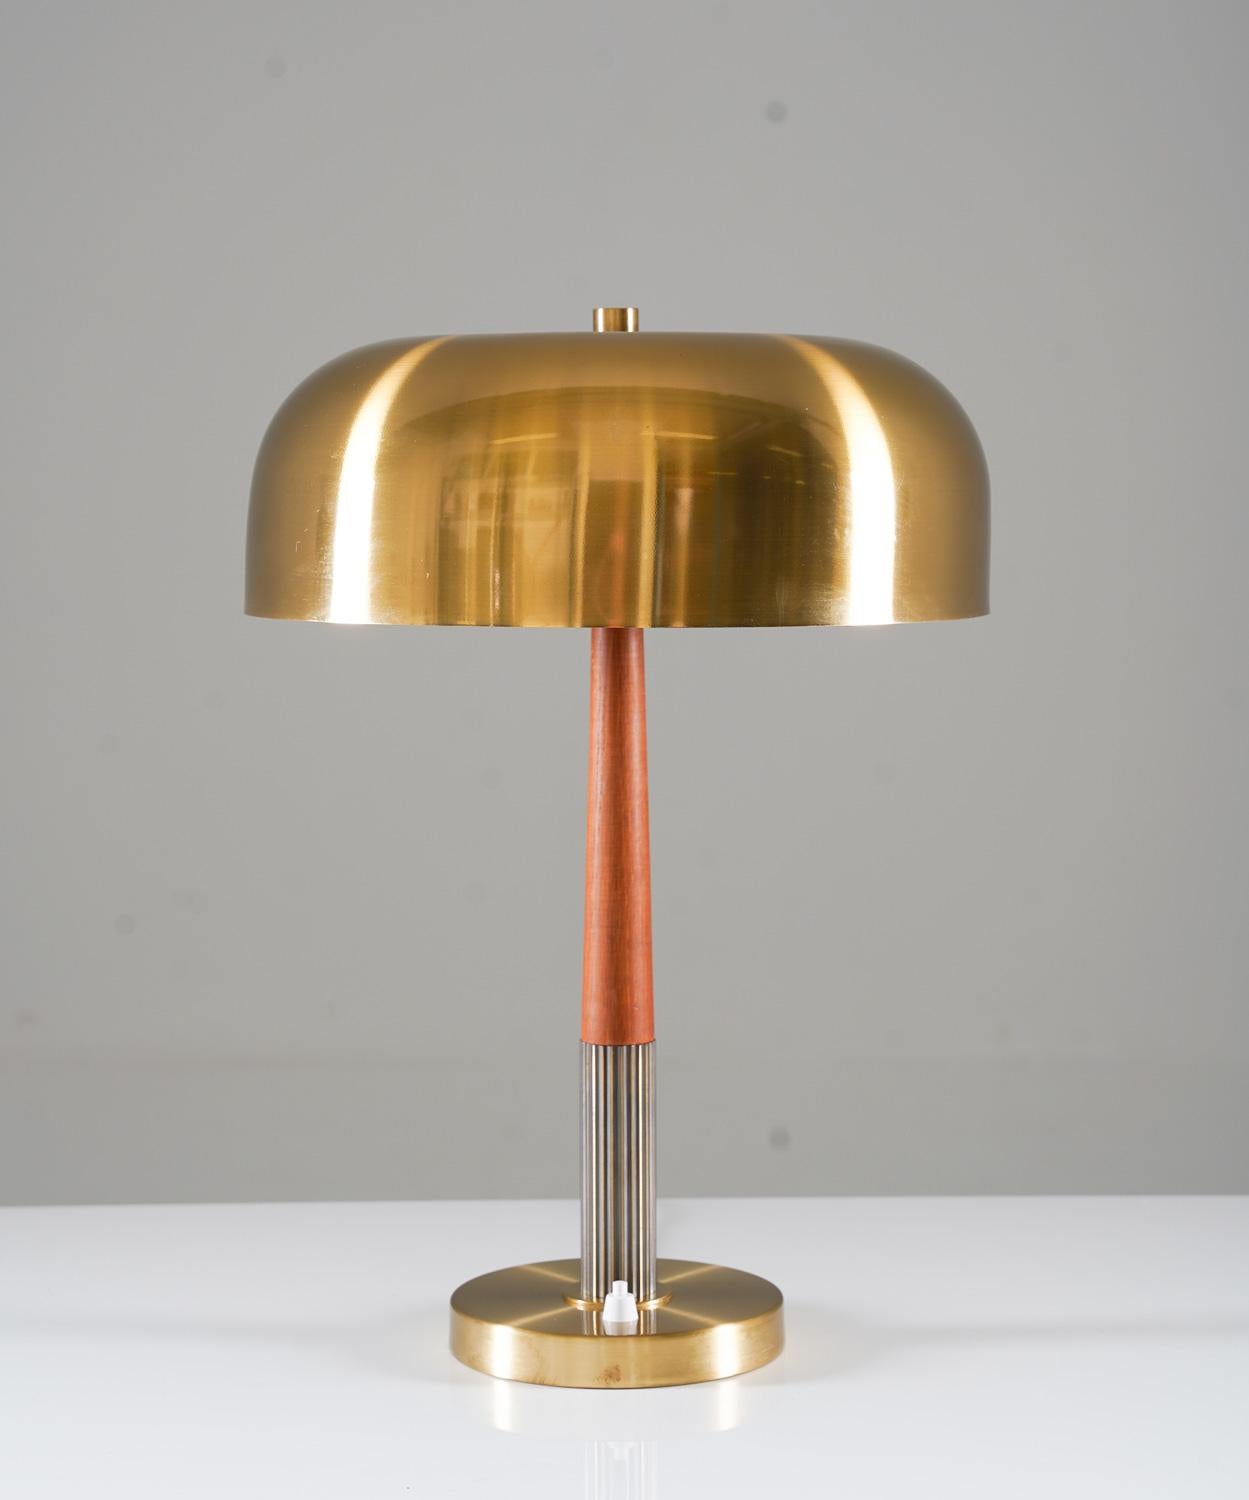 Tischleuchte Modell 8391 von Boréns, Schweden. 
Diese Lampe ist aus Messing und mit Details aus Teakholz gefertigt. 

Zustand: Sehr guter Zustand. Der Schirm ist nicht original für diese Lampe, sondern stammt aus dem gleichen Alter.